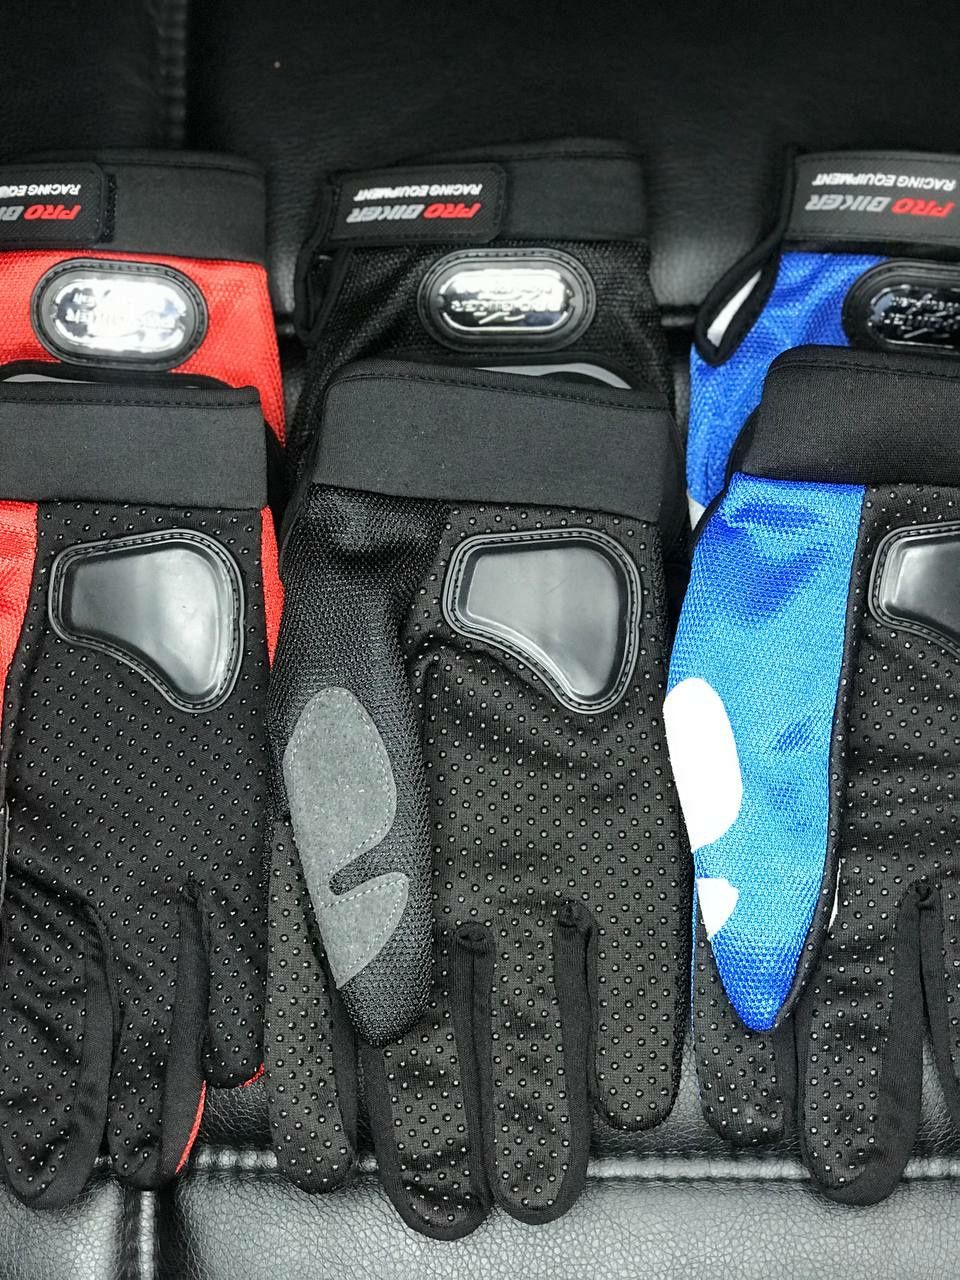 Текстильные Защитные Перчатки "Pro Biker". Разные расцветки и размеры!